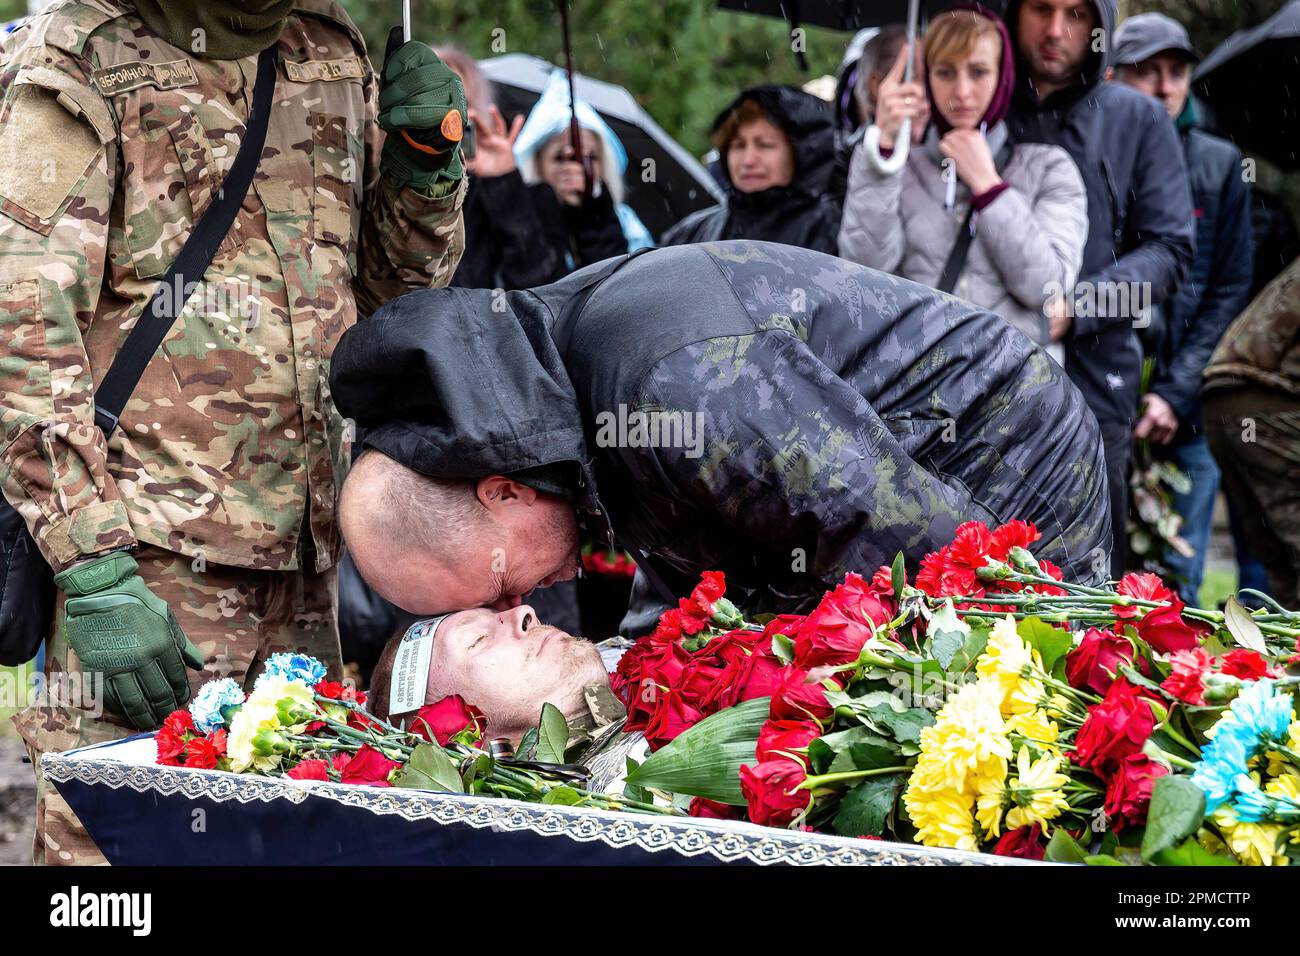 (ANMERKUNG DER REDAKTEURE: Bild zeigt den Tod) Ein Freund schenkt Respekt bei der Beerdigung von Evgeny Yakovlev, 42, einem Soldaten, der von russischen Streitkräften an der Ostukrainischen Front in einem Kampf auf dem Lisove-Friedhof in Kiew getötet wurde. Auf dem Lisove Friedhof sind die meisten der gefallenen Armeeangehörigen aus Kiew begraben. Da die Invasion der Ukraine in vollem Umfang durch die russischen Streitkräfte andauert, verursacht der Kampf im Osten der Ukraine eine sehr hohe Zahl von Opfern, obwohl die genauen Zahlen unbekannt sind. Die Ukraine bereitet sich auf eine Frühjahrsoffensive zur Rückeroberung des von Russland besetzten Landes vor. Stockfoto